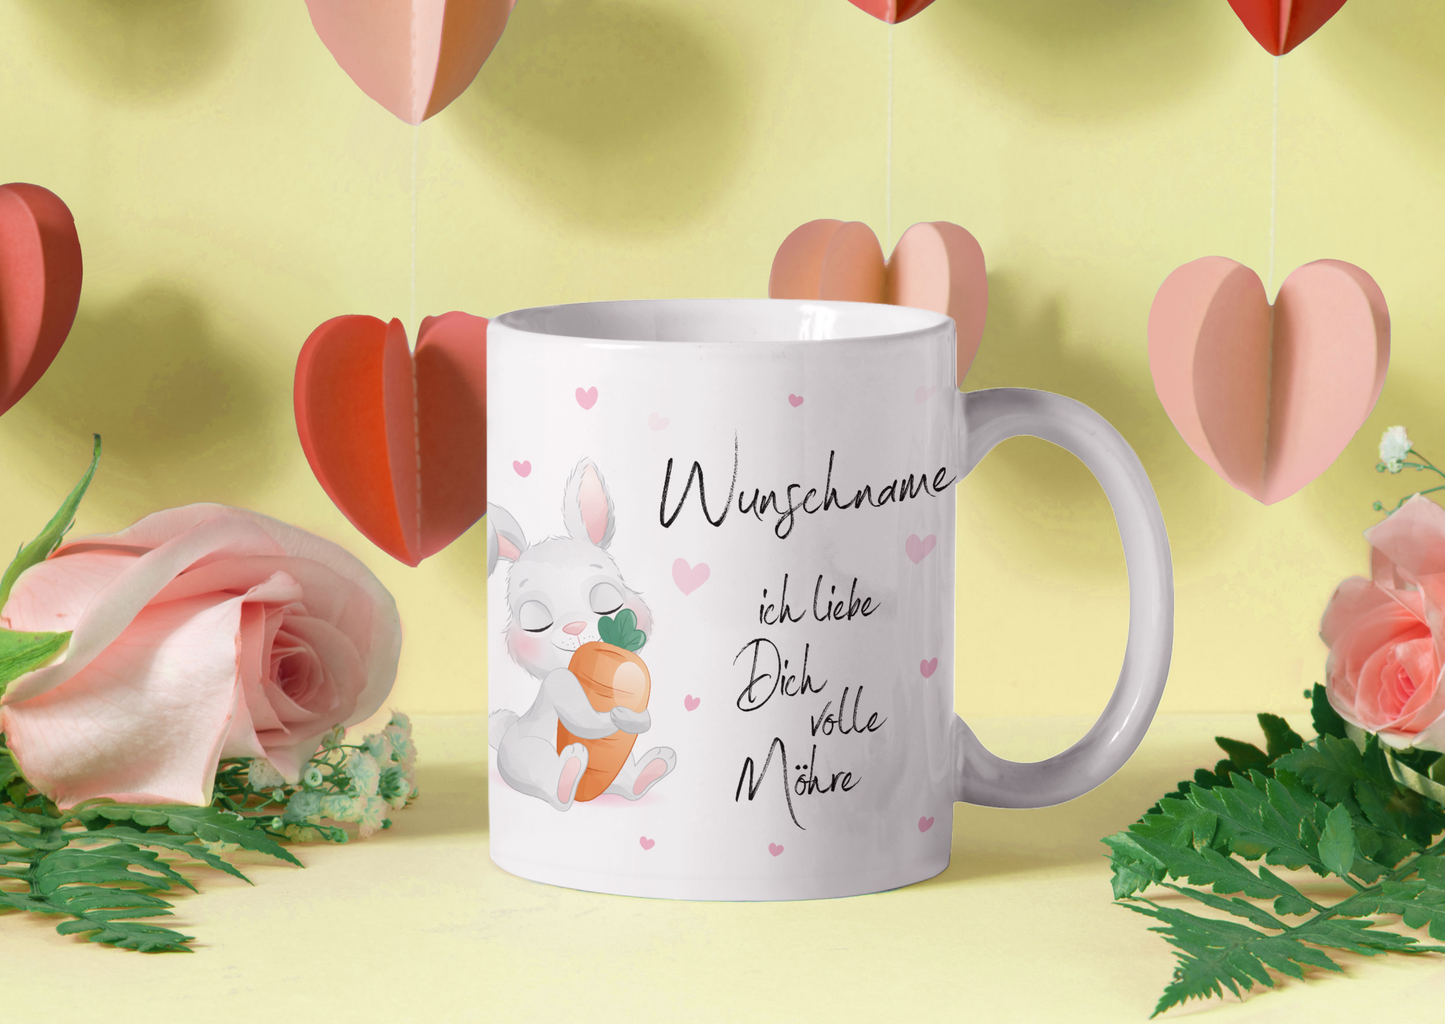 Tasse personalisiert mit Namen, Wunschname ich liebe dich volle Möhre, Ostergeschenk für Männer und Frauen